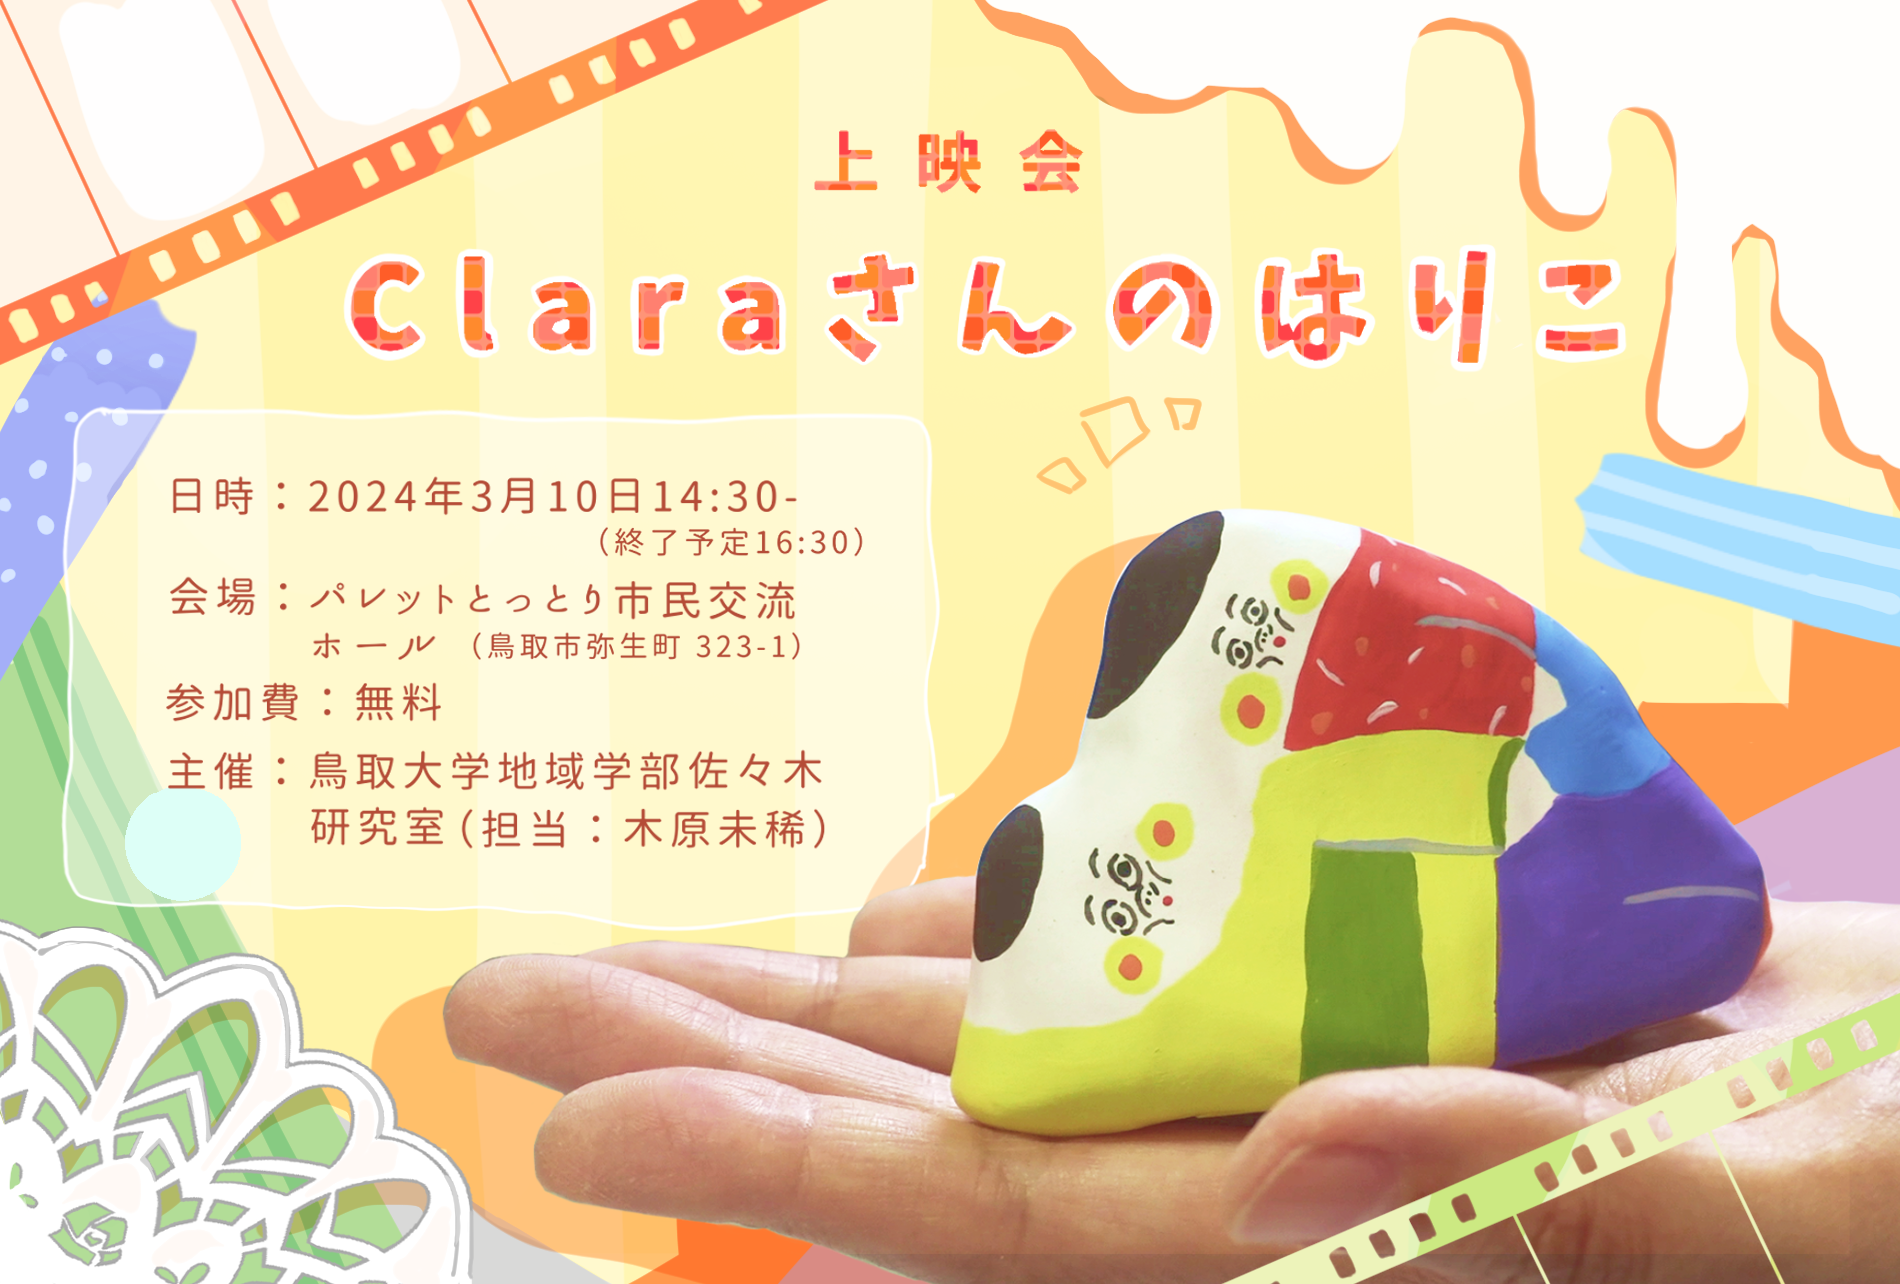 『Claraさんのはりこ』上映会ポストカード